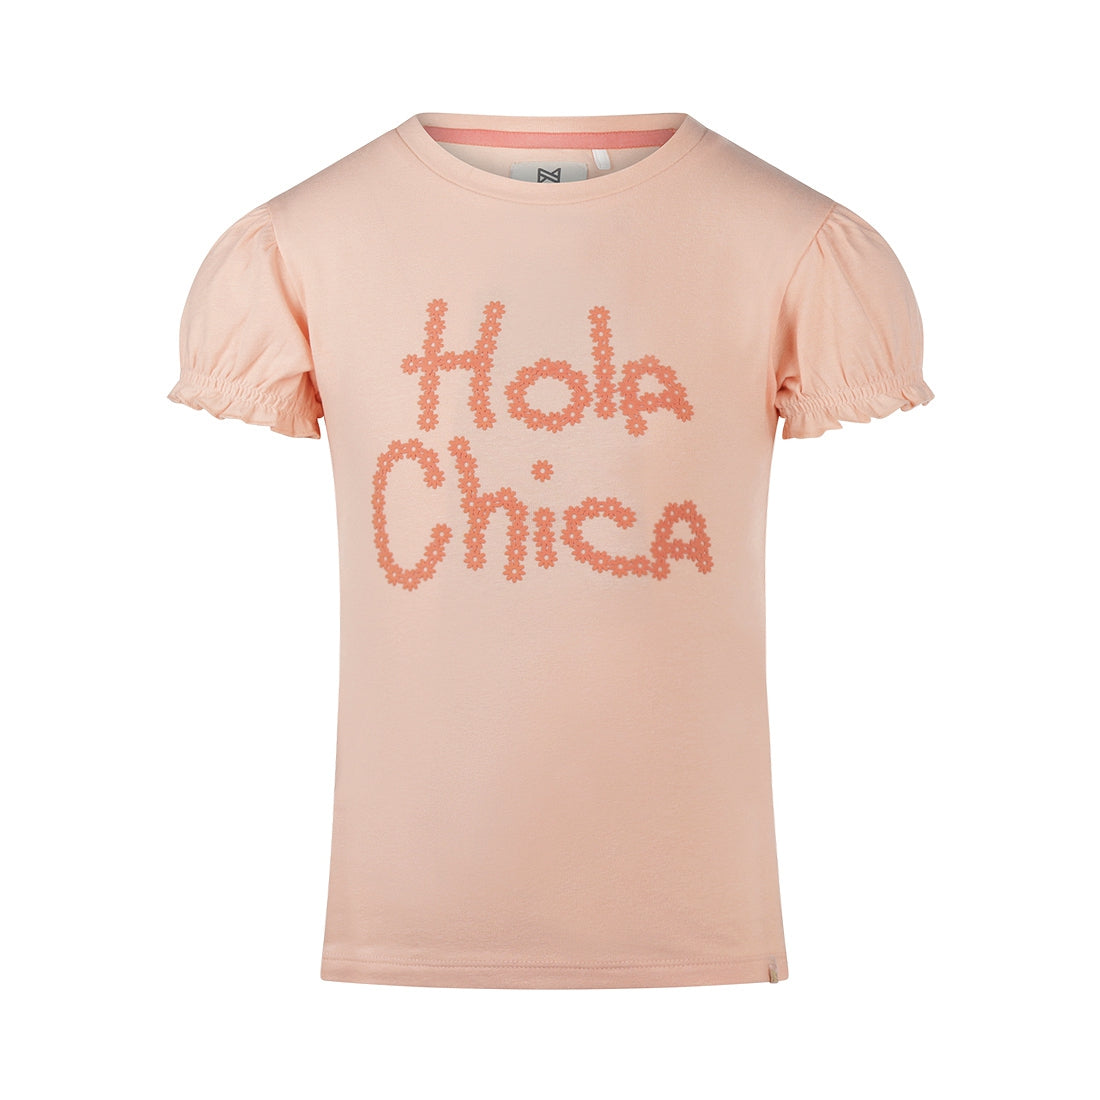 Meisjes T-shirt ss van Koko Noko in de kleur Pink in maat 128.